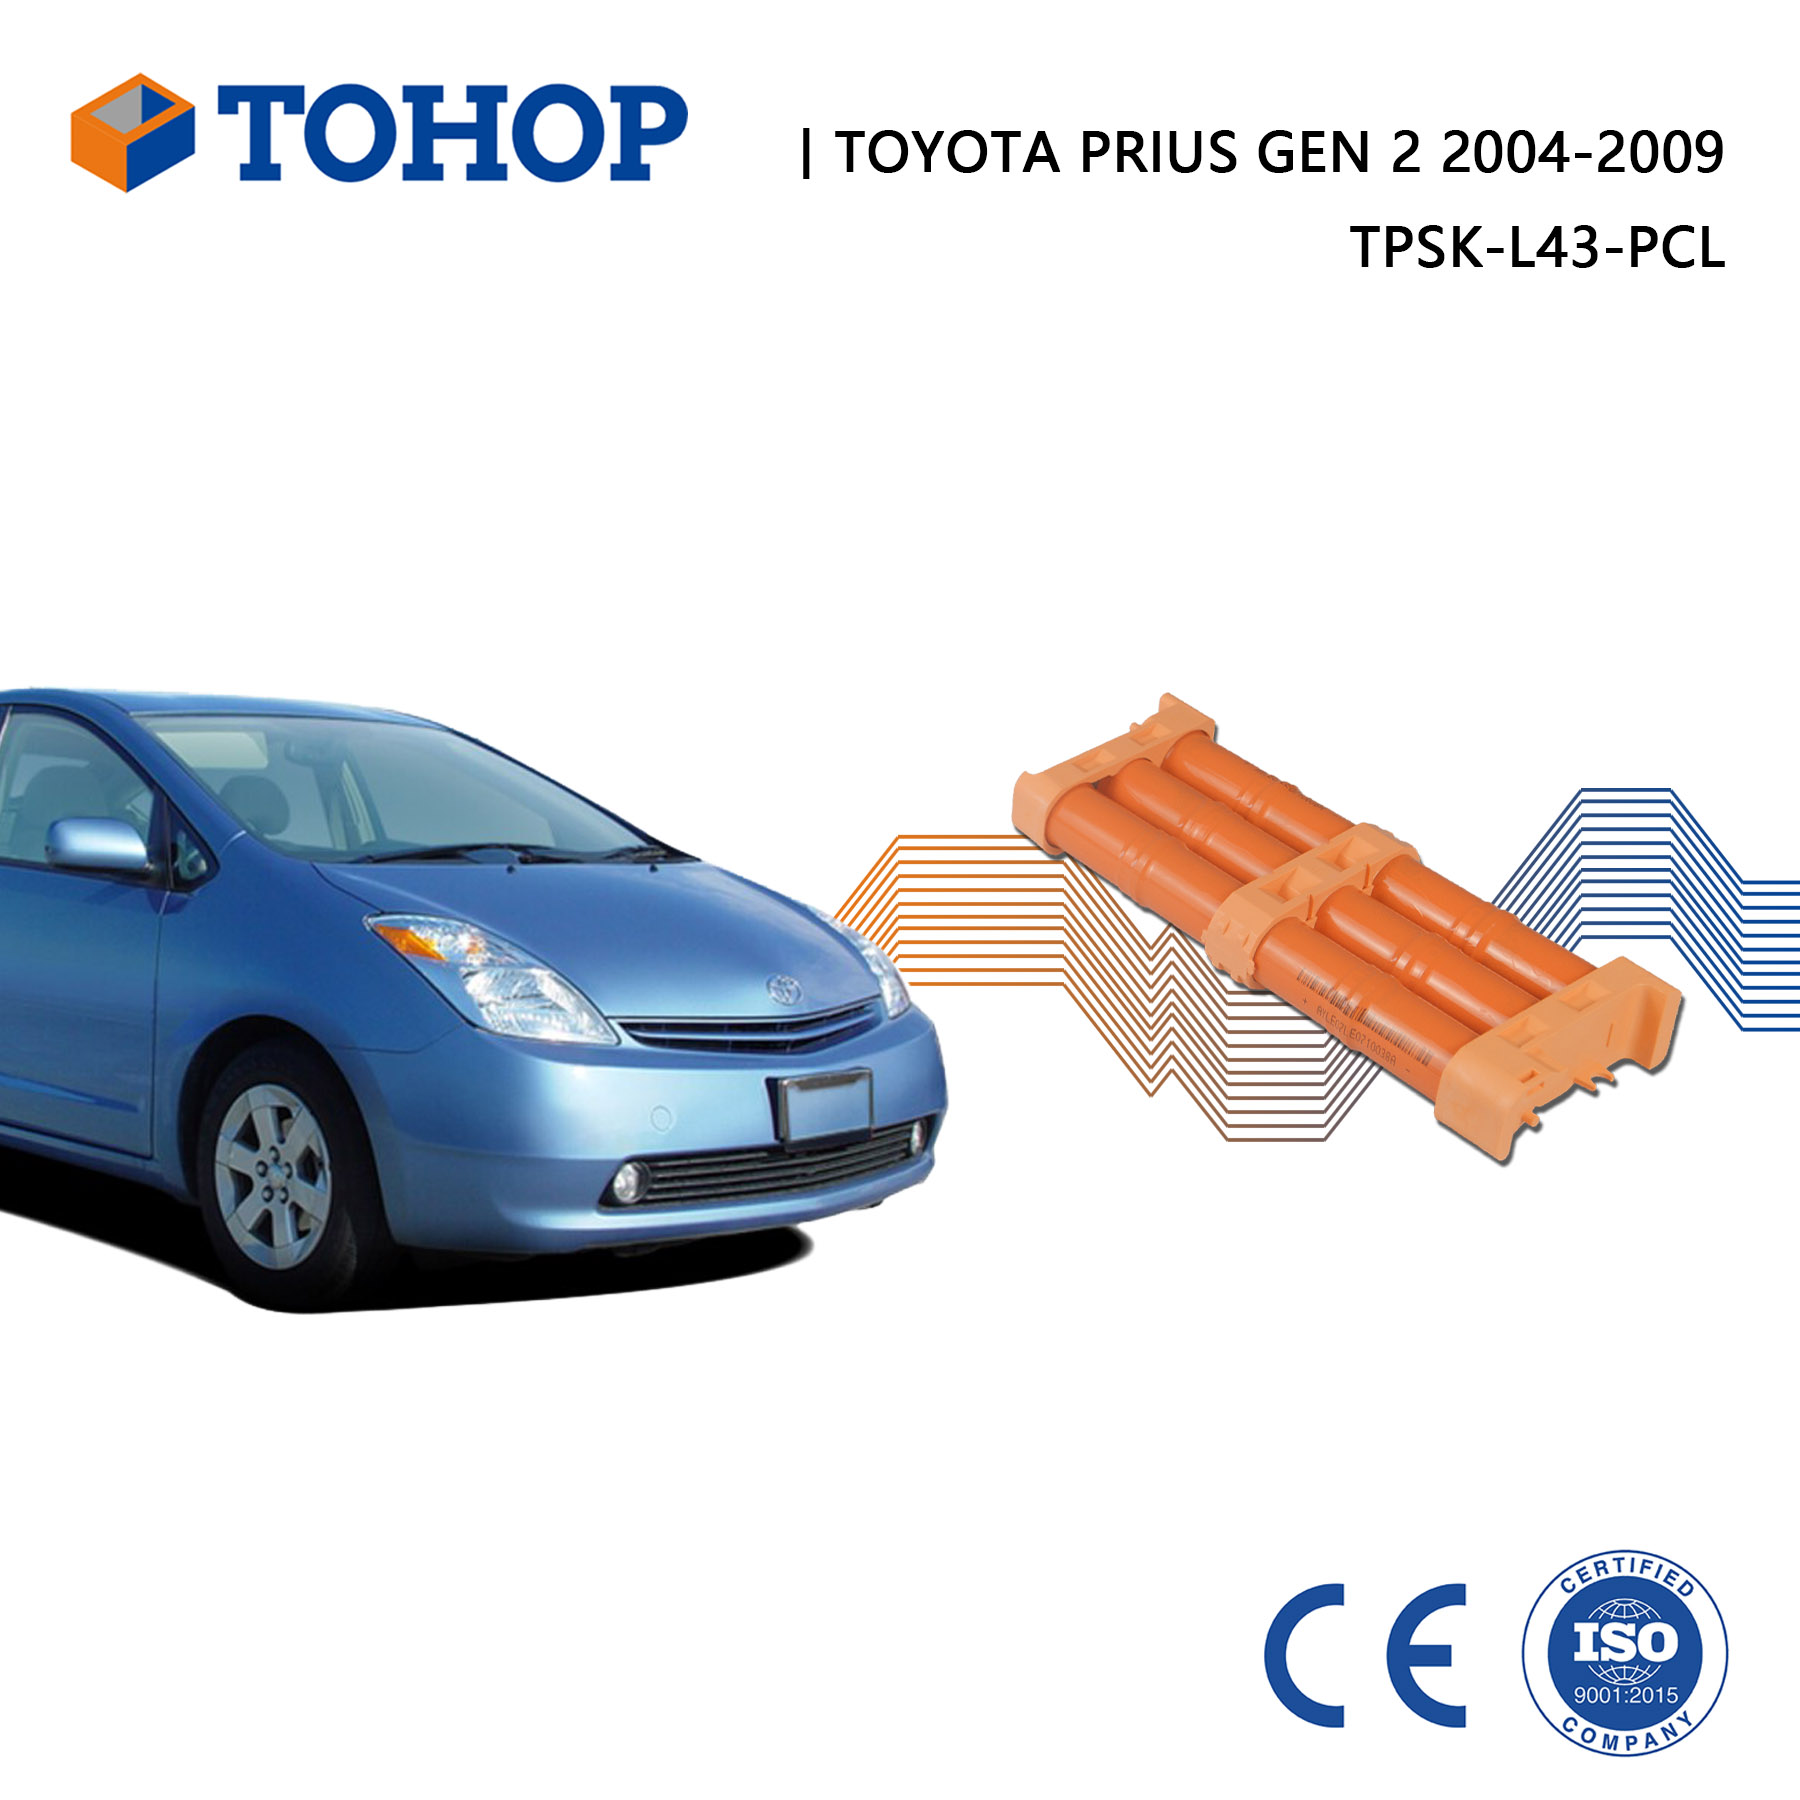 Batterie de remplacement Toyota Prius hybride Gen 2 Gen 3 2004-2014 Nimh